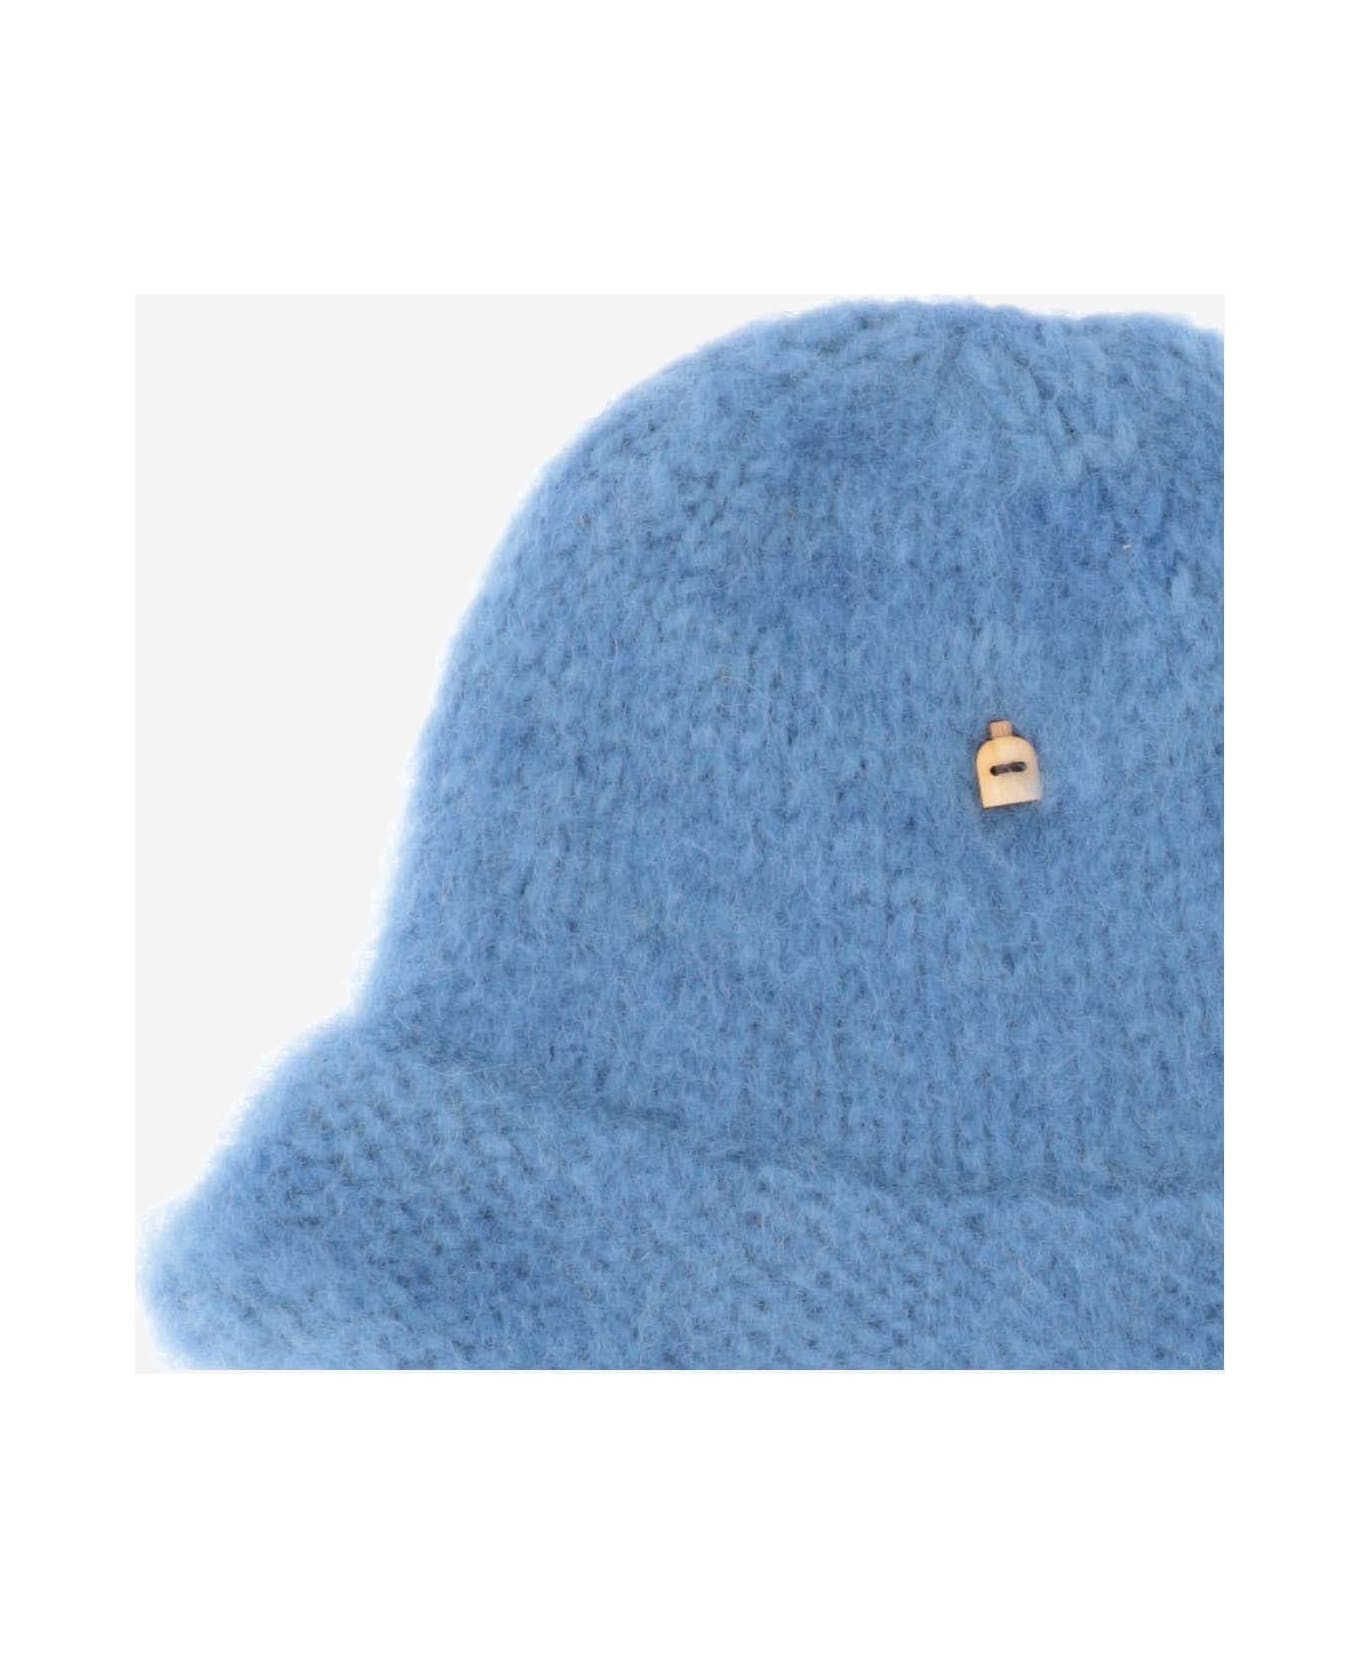 Myssy Wool Bucket Hat - Clear Blue